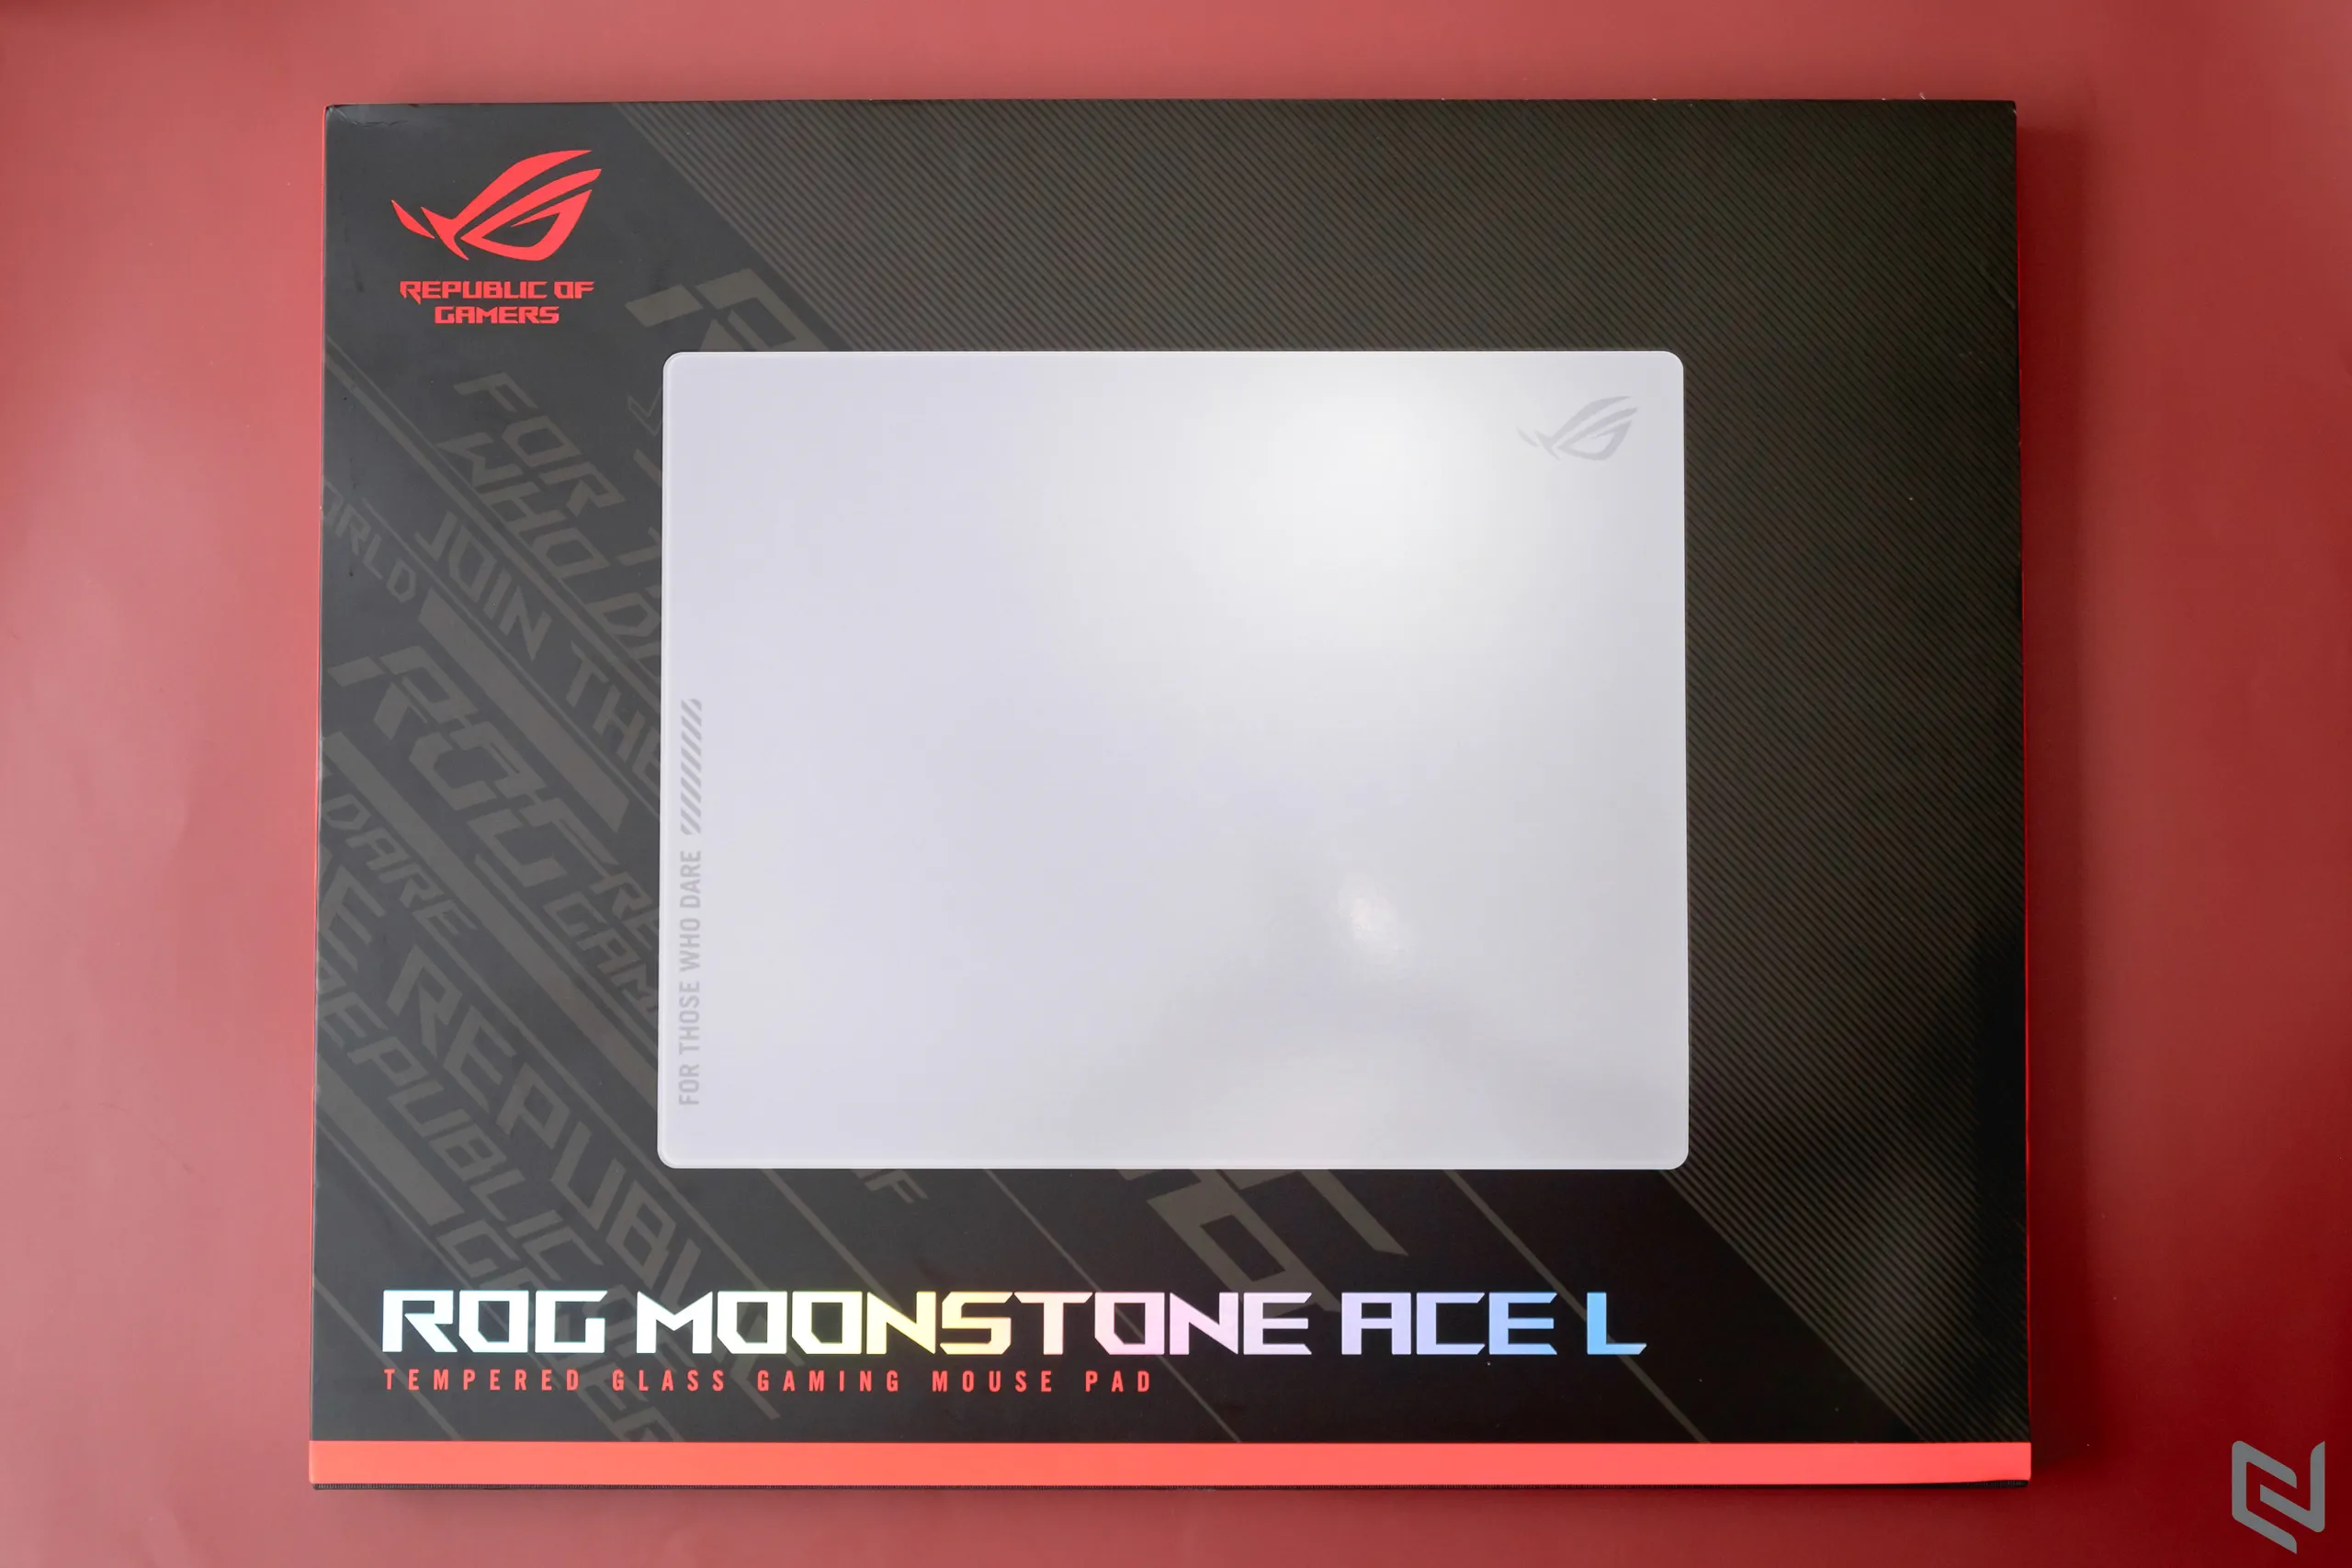 Đánh giá lót chuột ASUS ROG Moonstone Ace L: Kính cường lực cao cấp, bề mặt di chuột siêu mượt và kích thước lớn